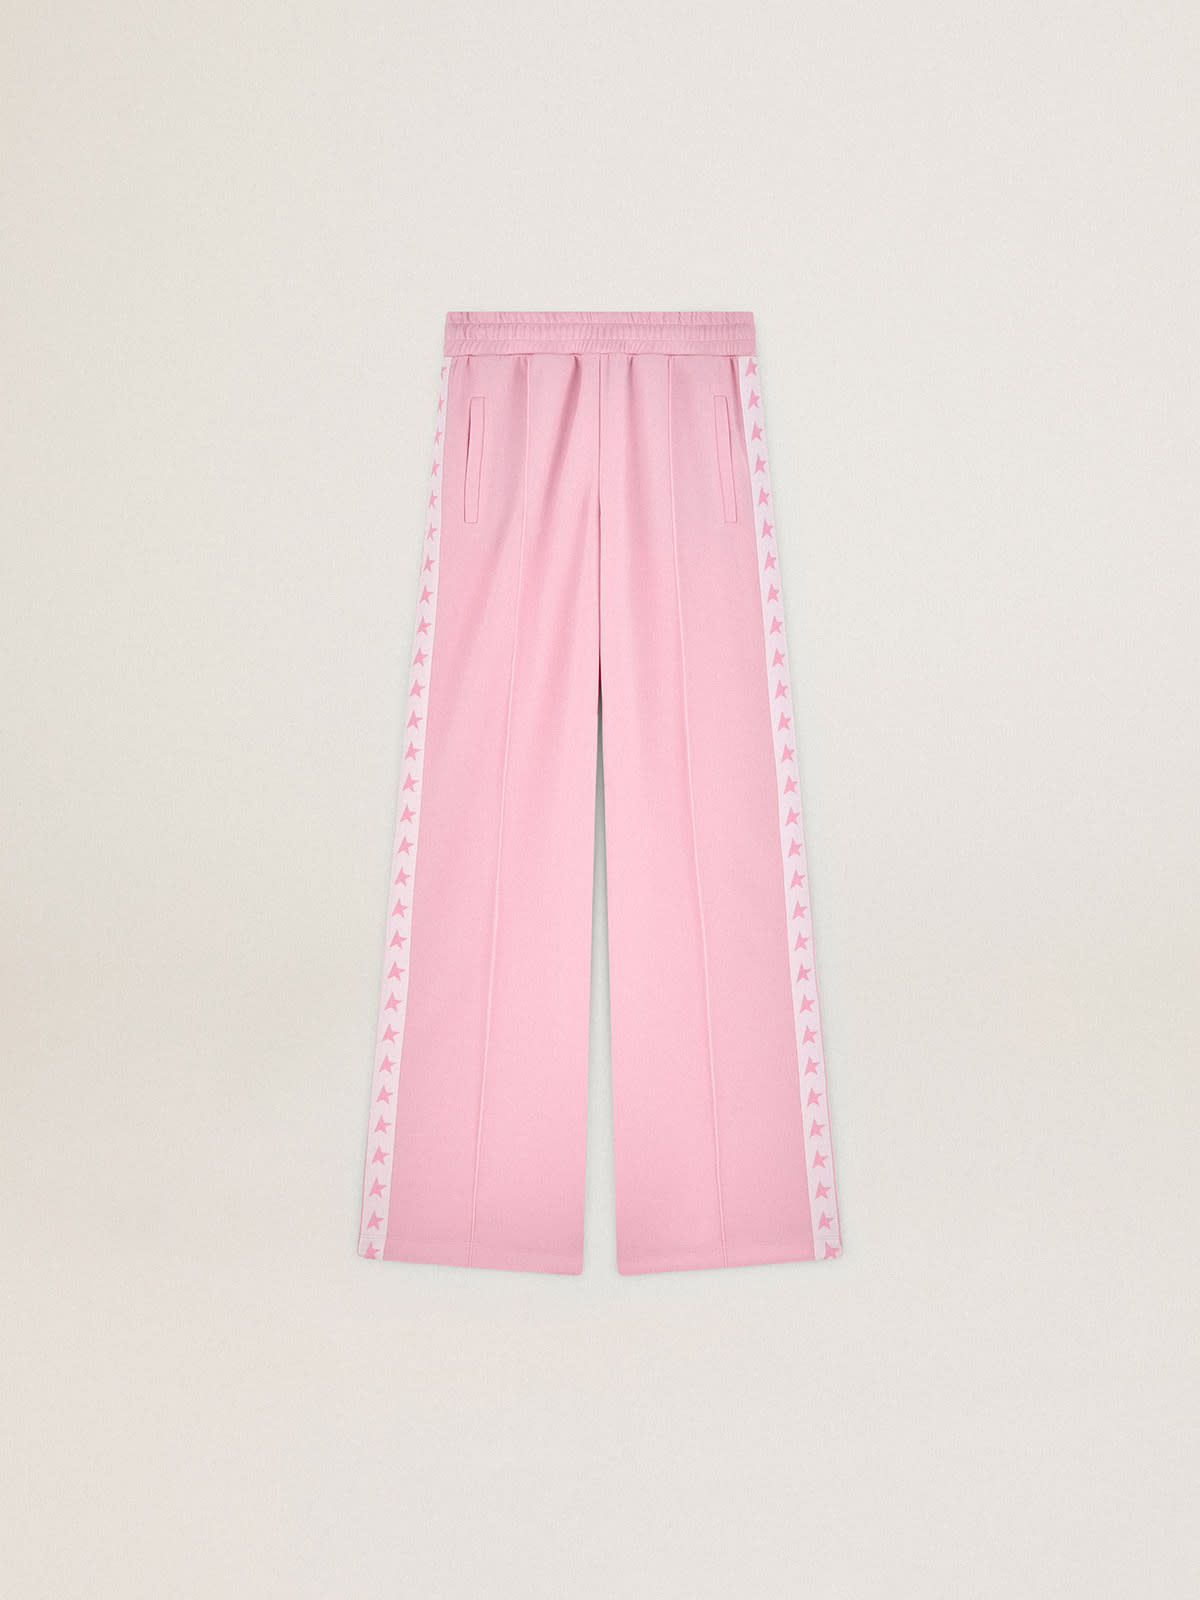 Golden Goose - Pantalon de jogging Dorotea collection Star de couleur rose avec bande blanche et étoiles roses sur les côtés in 